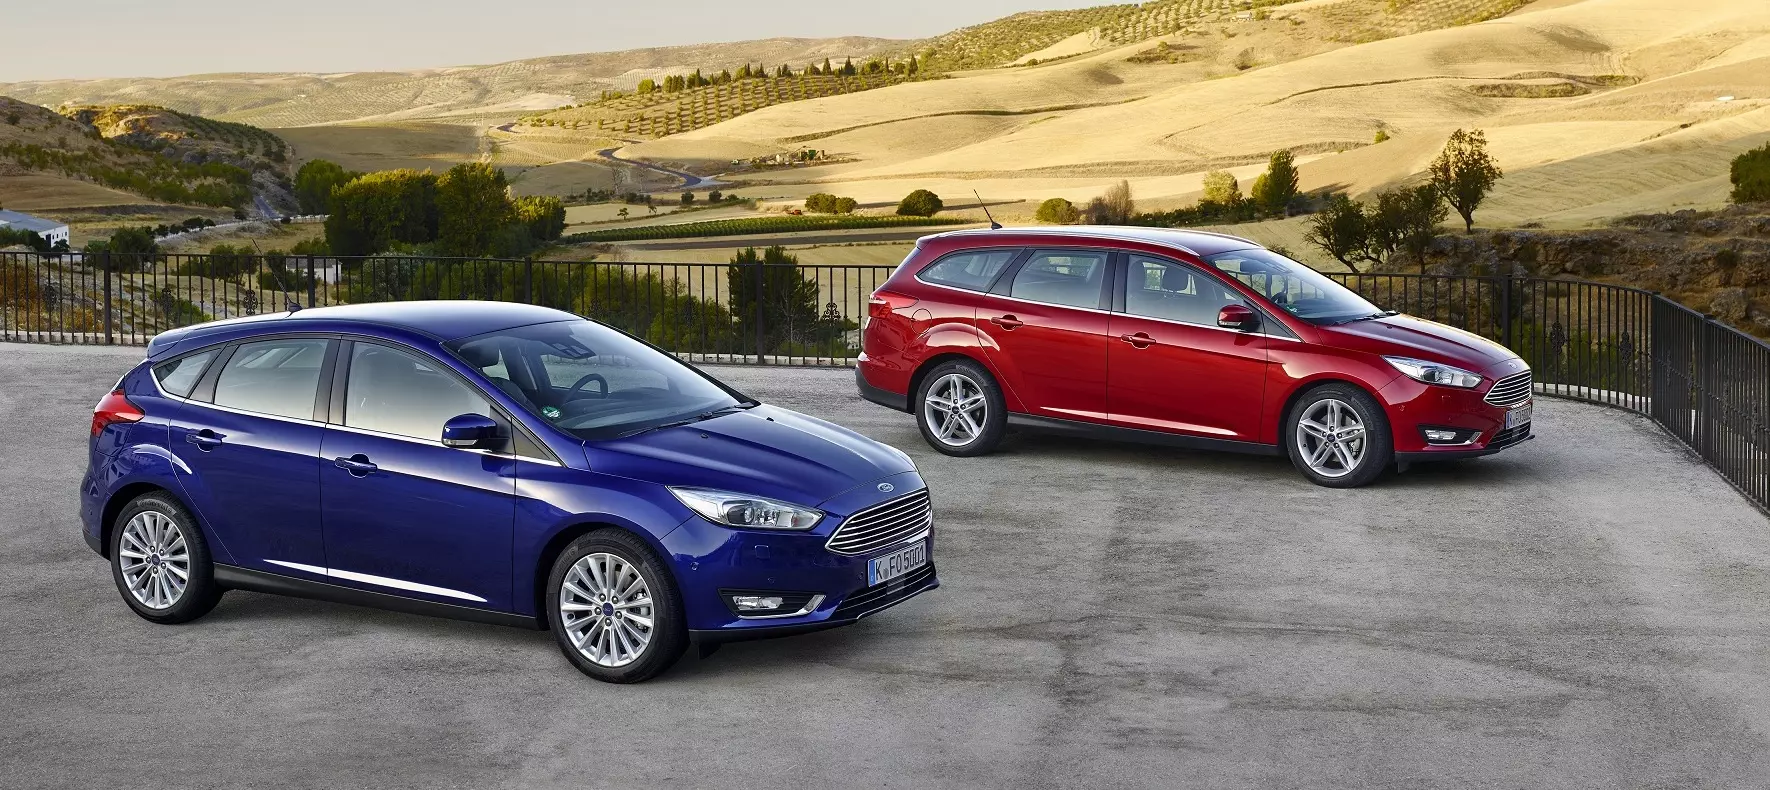 Ford Focus i ri me çmime të përditësuara për vitin 2015